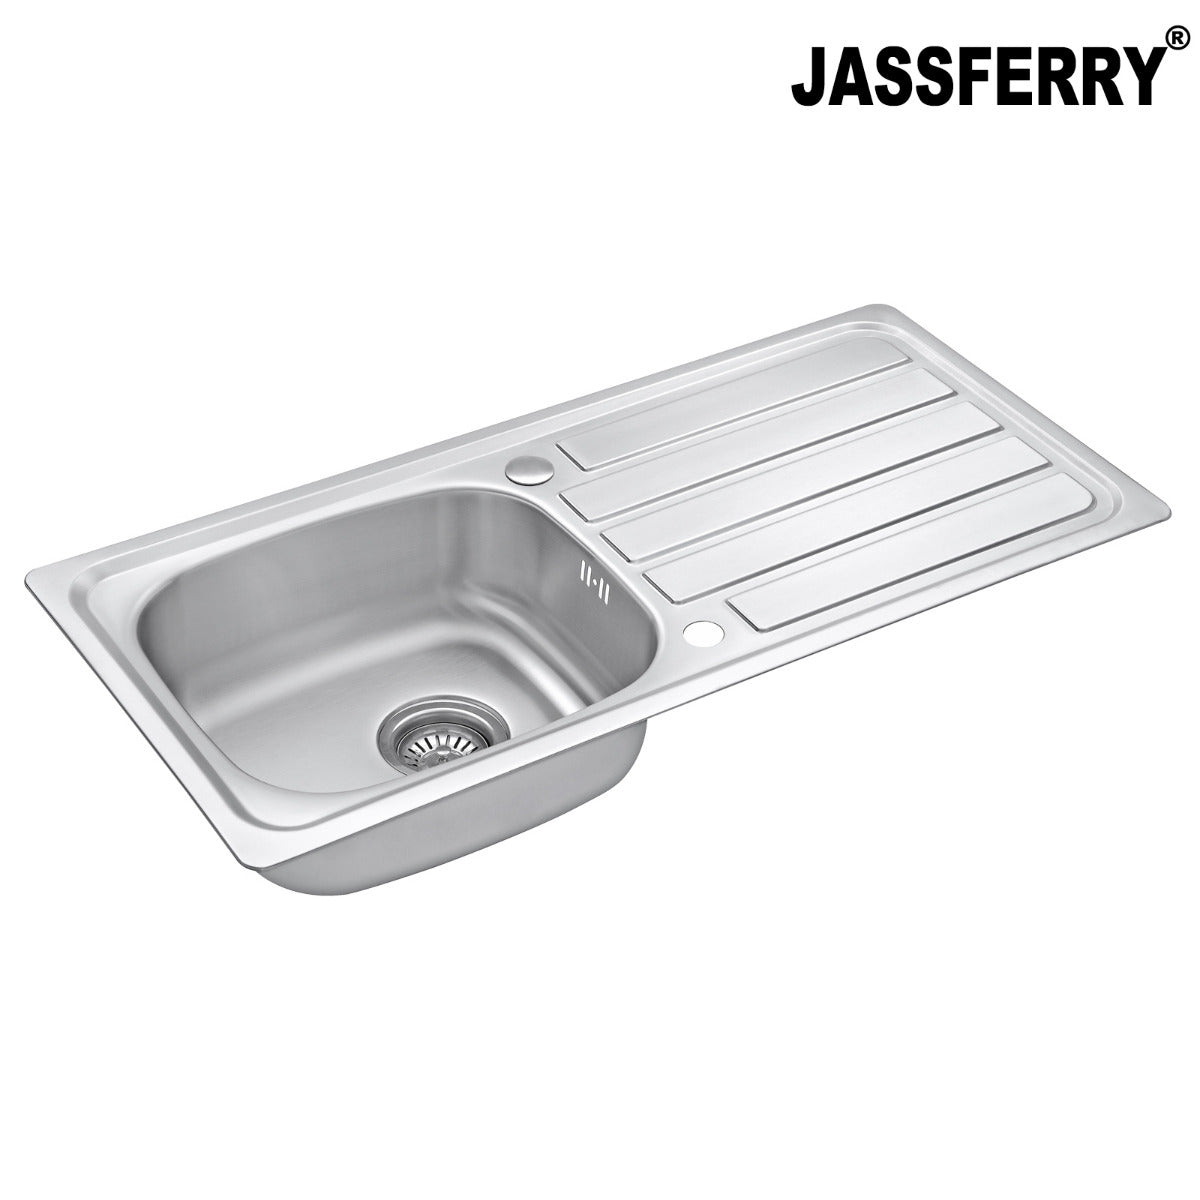 JassferryJASSFERRY 930 x 430 mm Stainless Steel Kitchen Sink 1 Bowl with Waste StrainerKitchen Sink